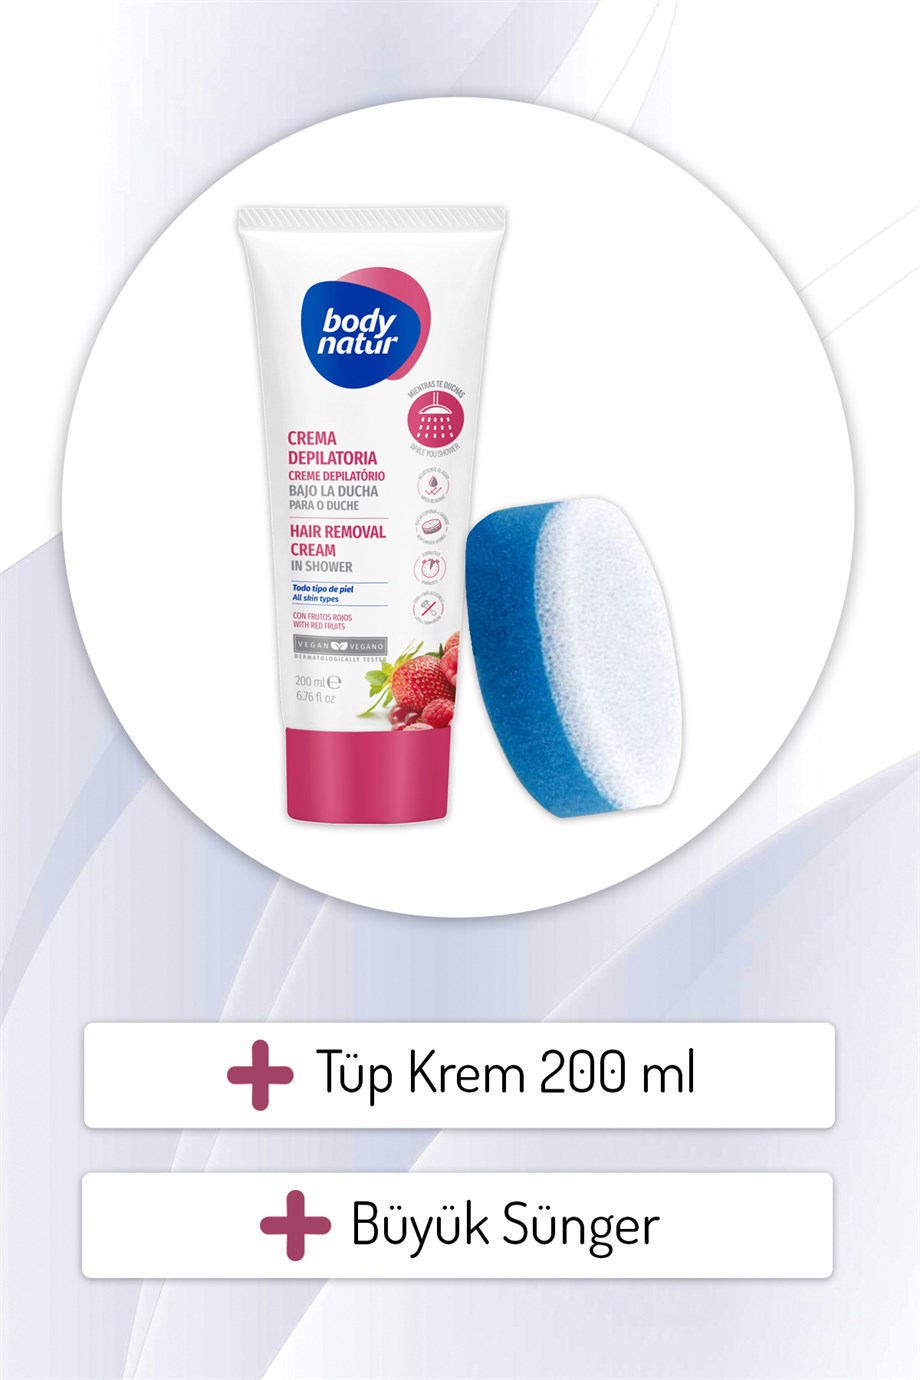 Body Natur Duşta Vücut Tüy Dökücü Krem Tüm Cilt Tipleri İçin Kırmızı  Meyveli - Hair Removal Cream